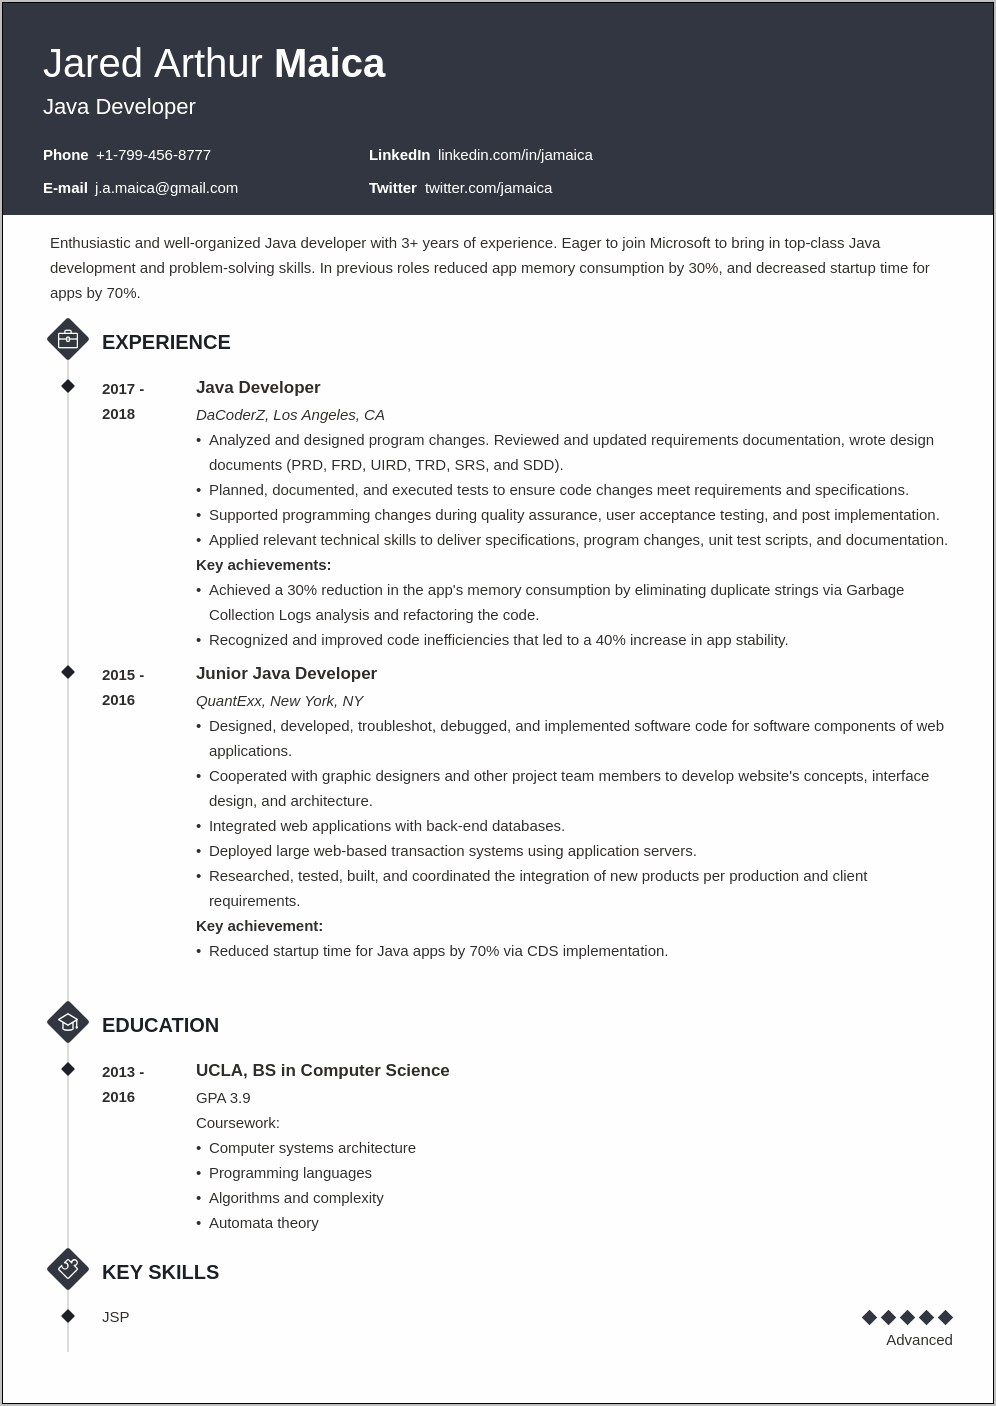 Career Objective For Resume For Java Developer